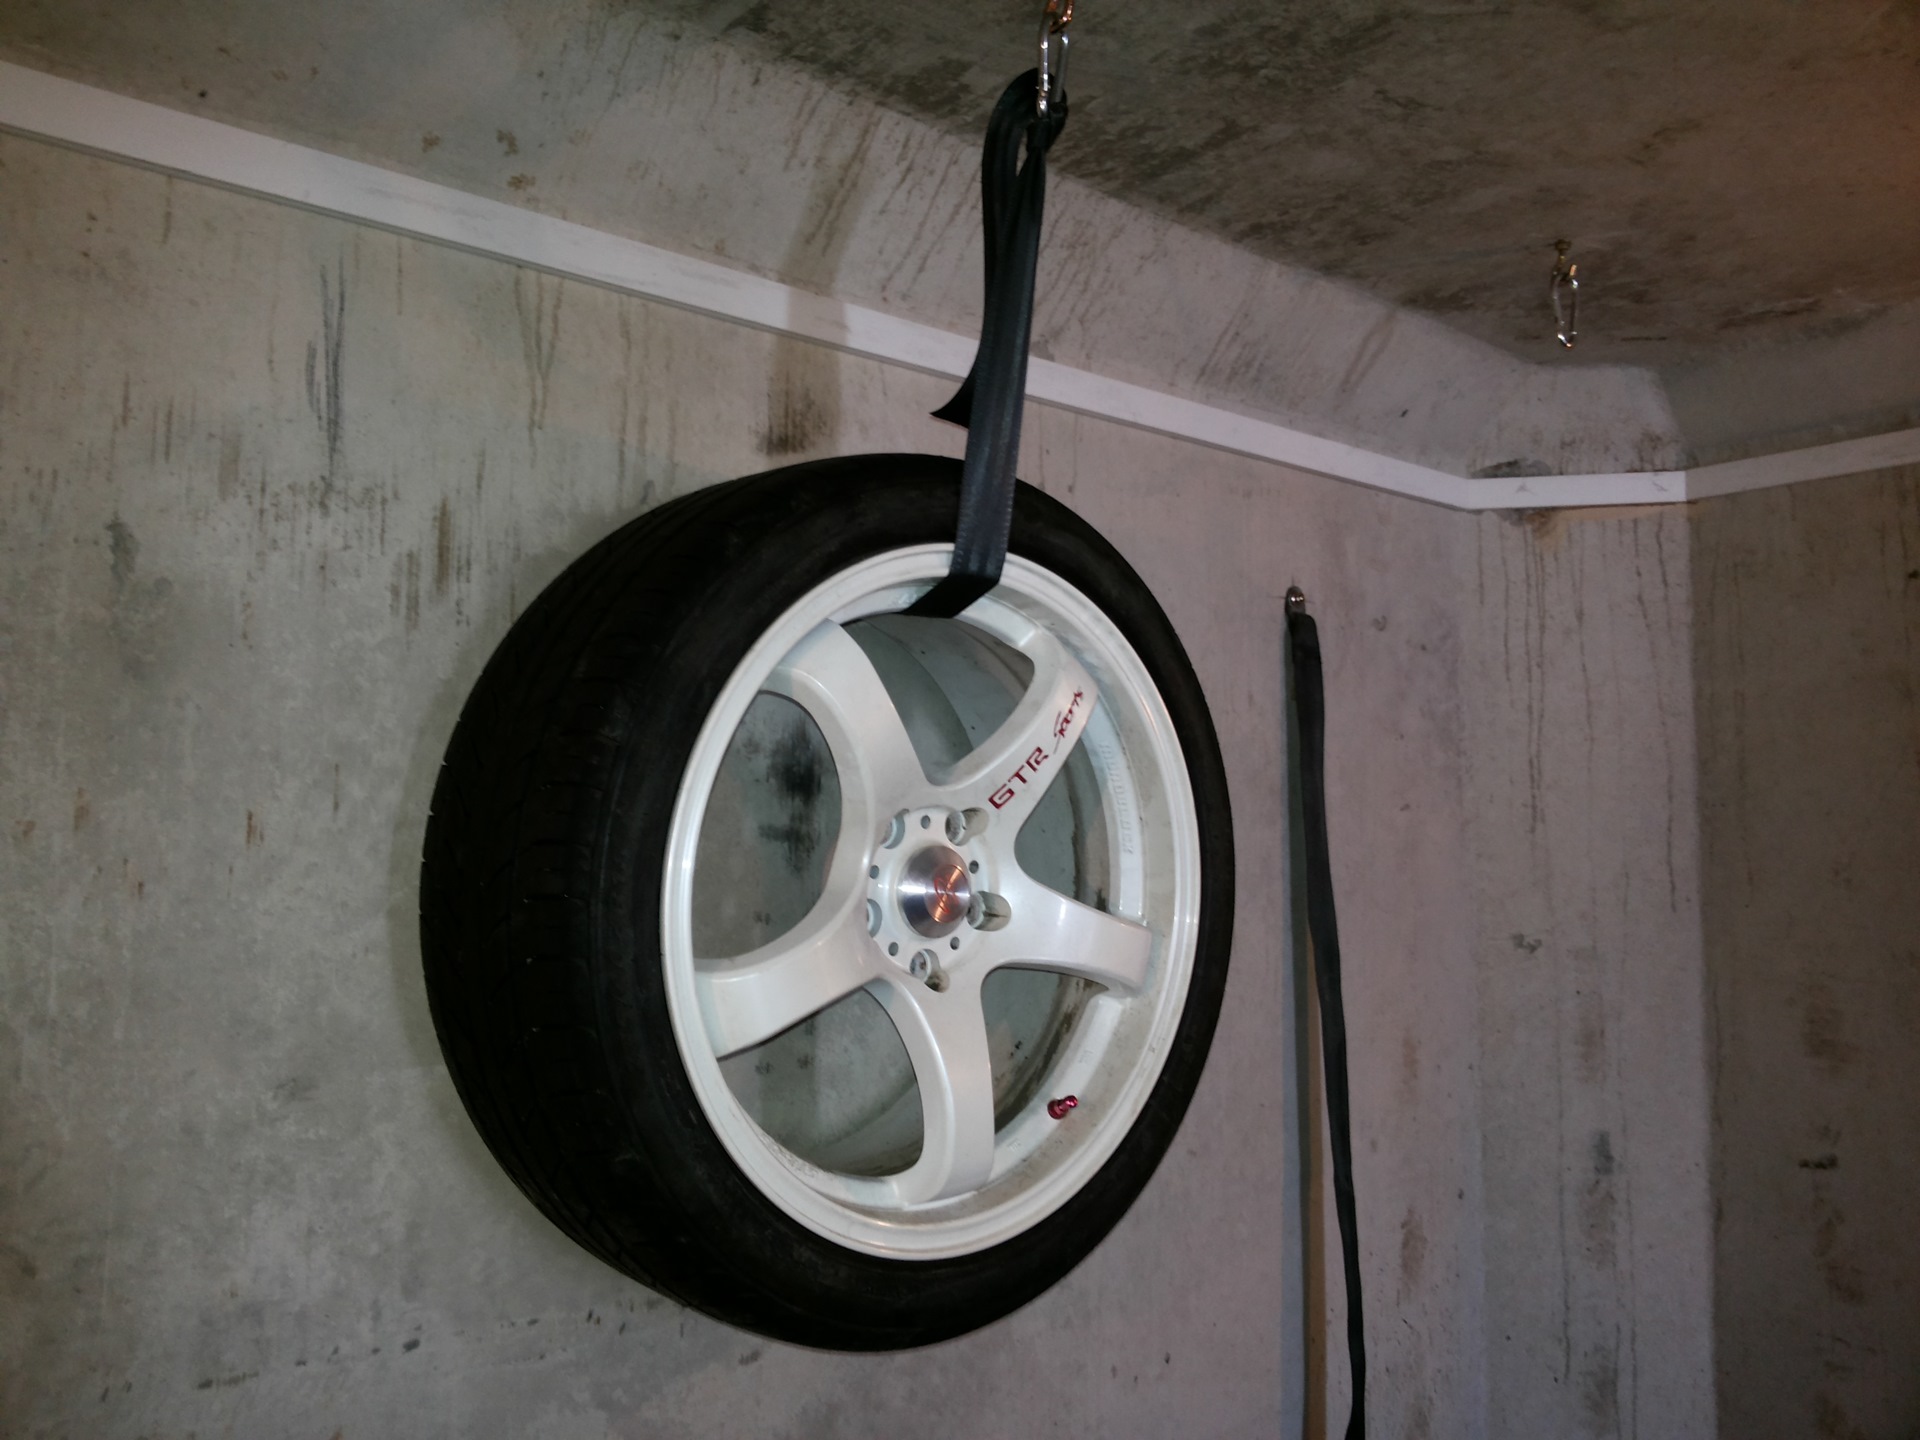 Кронштейн для колес на стену. Кронштейн для подвешивания колес в гараже. Подвесы для колес в гараже. Подвес для хранения колес. Кронштейн для хранения колес на стене.